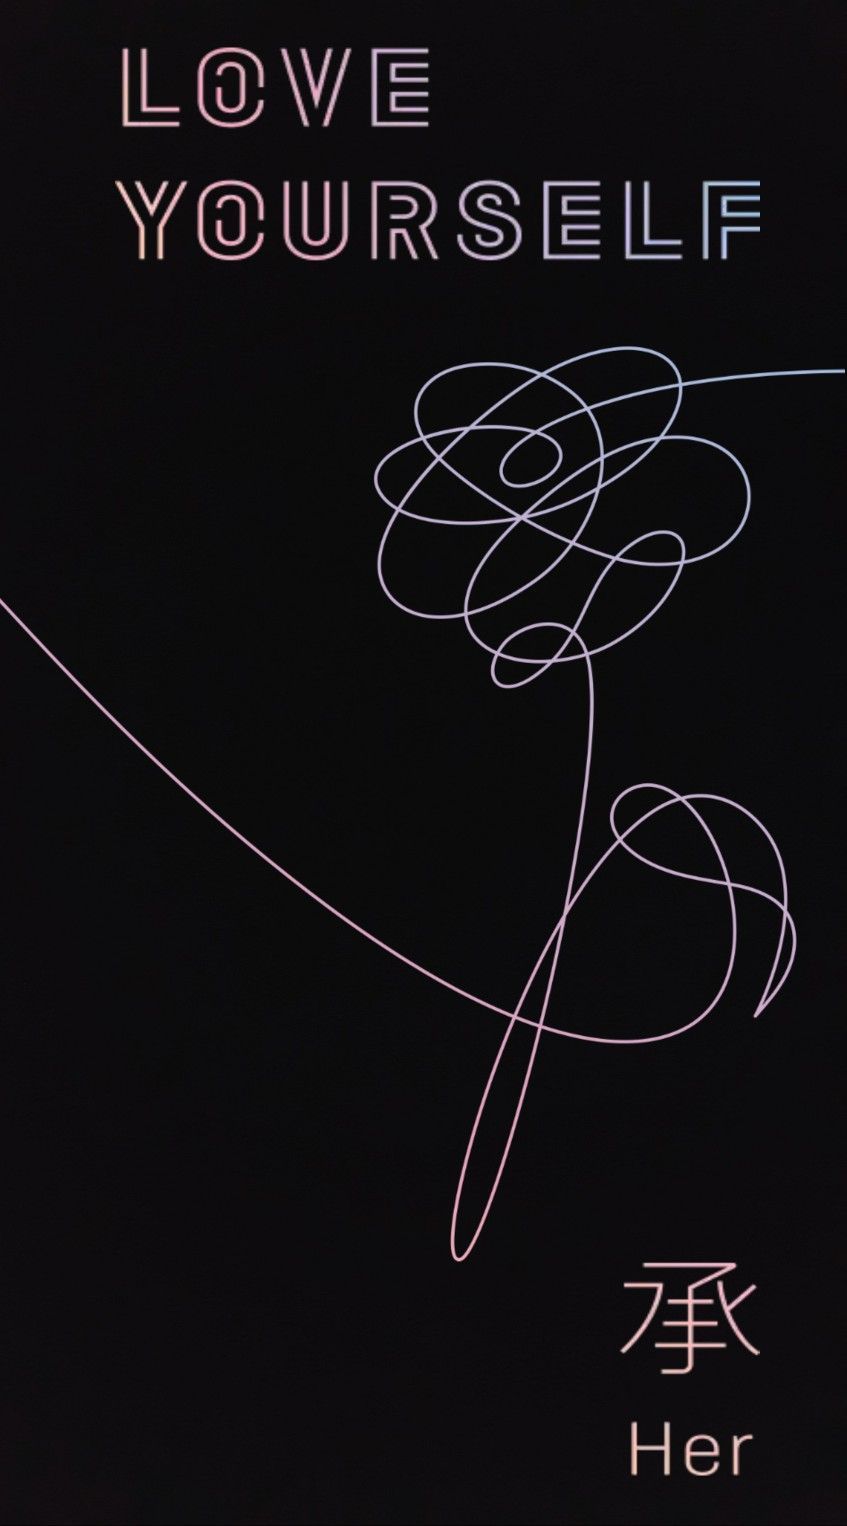 BTS Flower Wallpaper Free BTS Flower Background